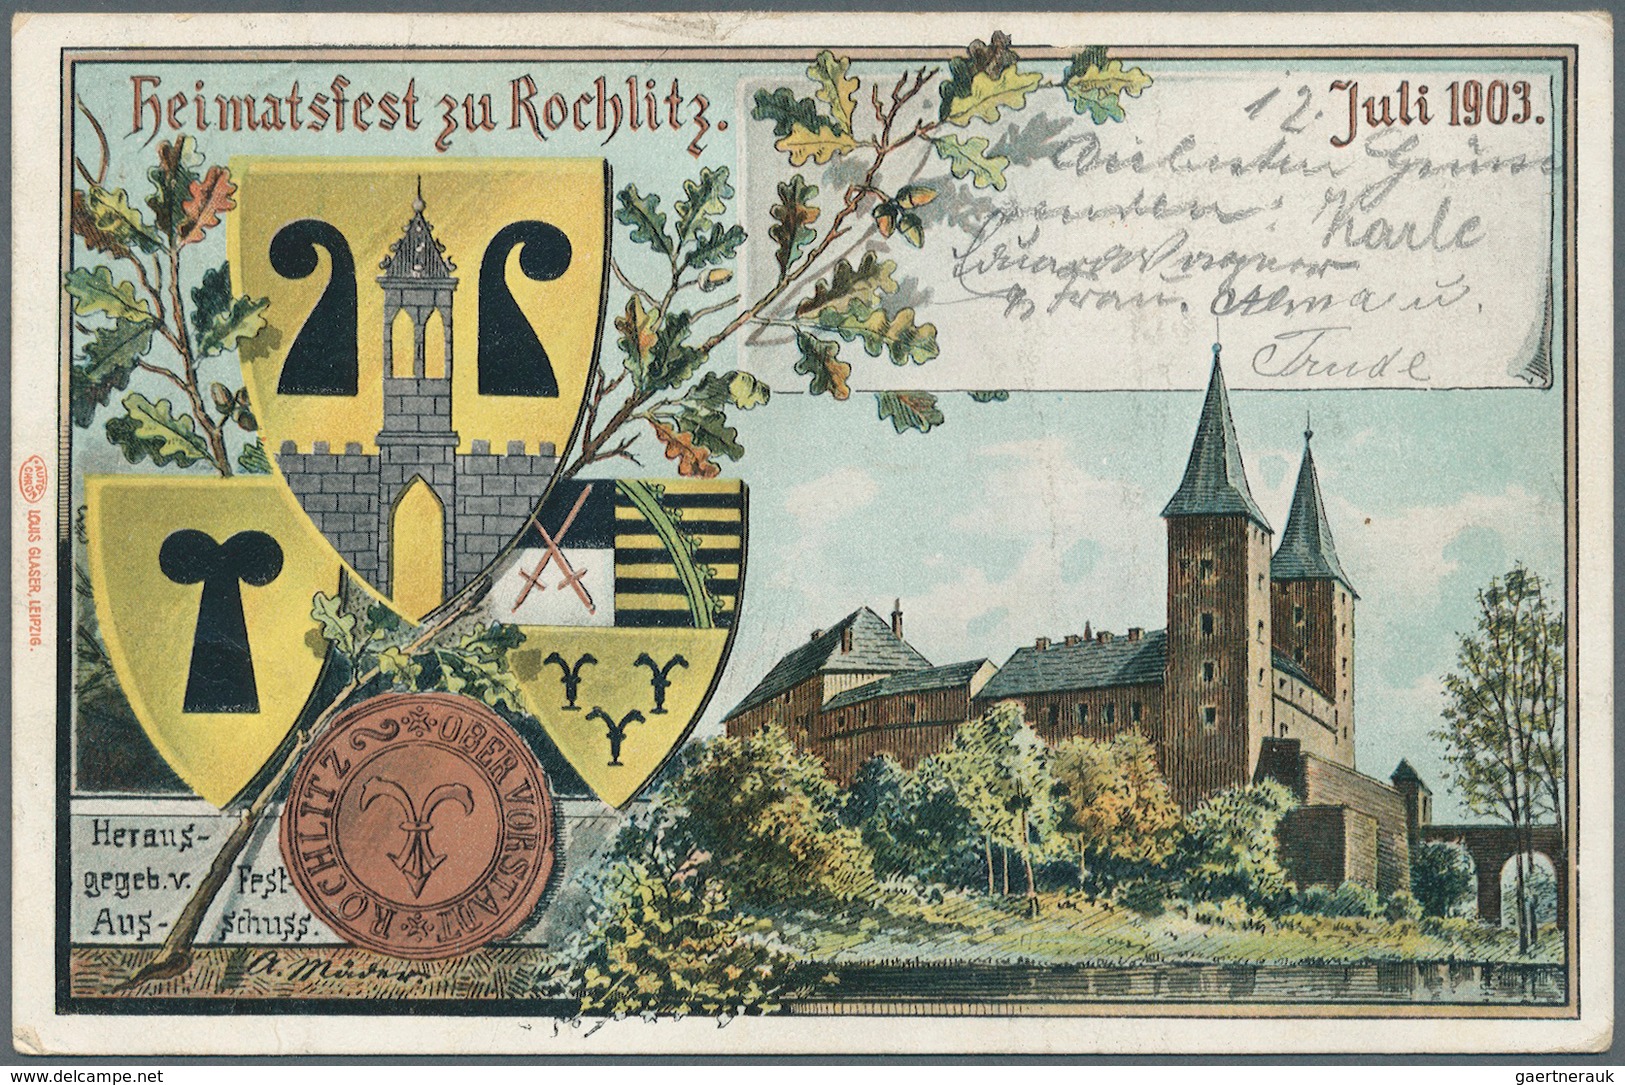 31789 Deutsches Reich - Privatganzsachen: 1890/1914 ca., PRIVATGANZSACHEN, gehaltvolle Sammlung mit ca. 20